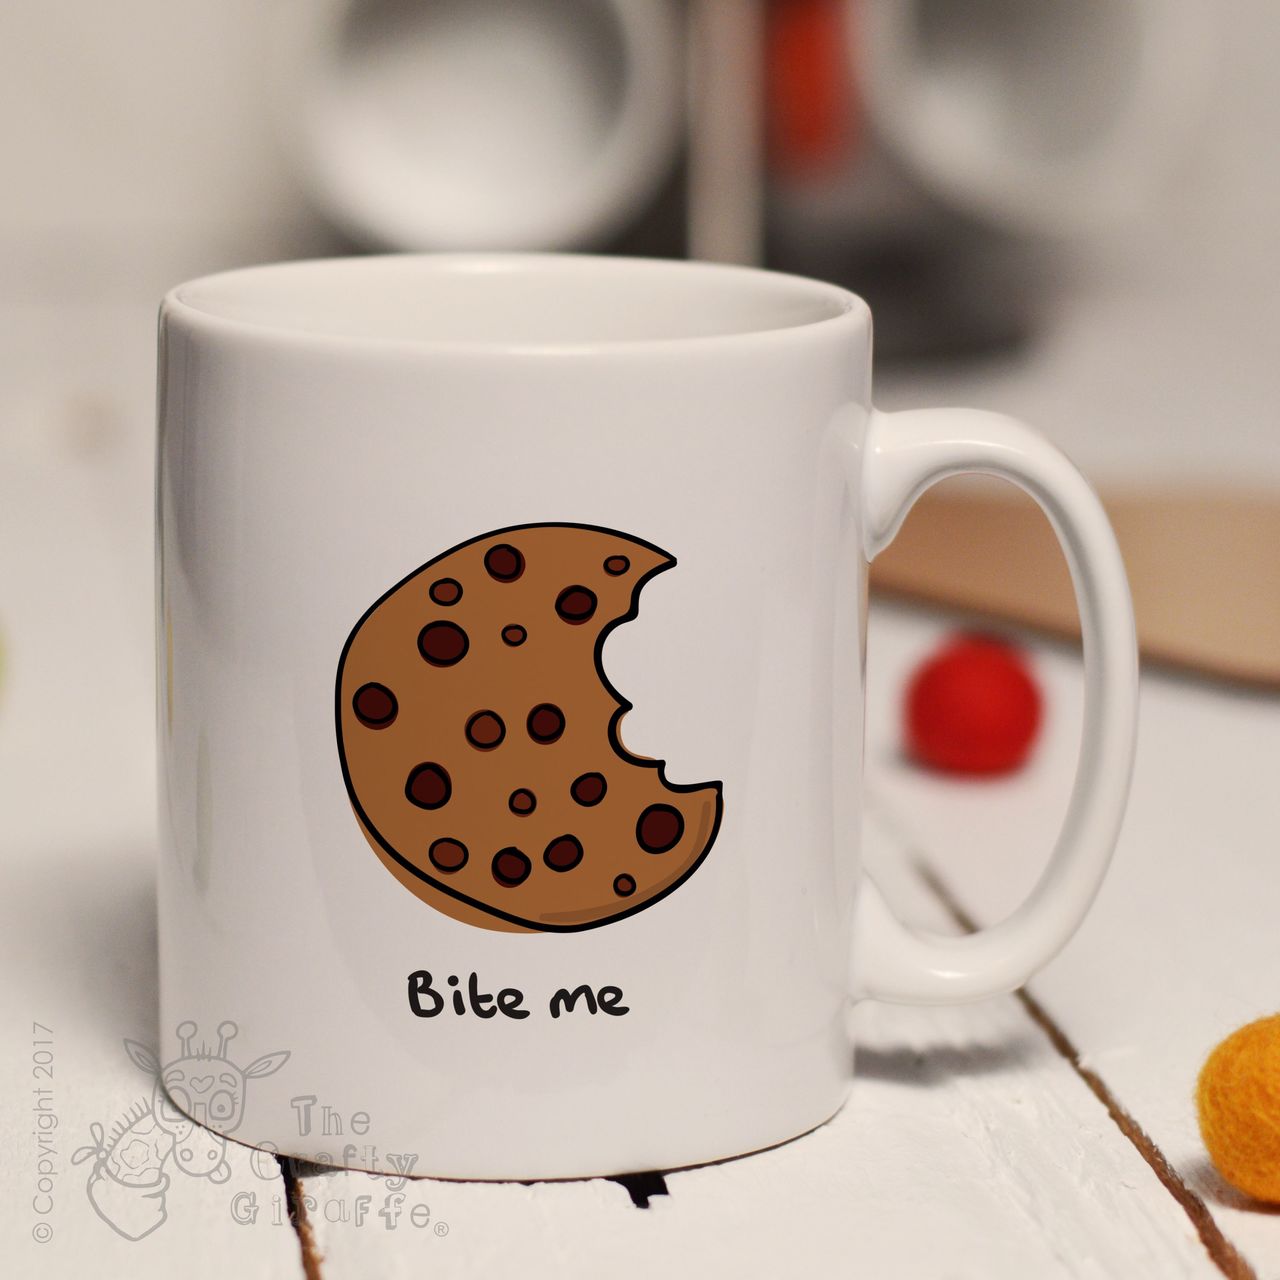 Bite me mug